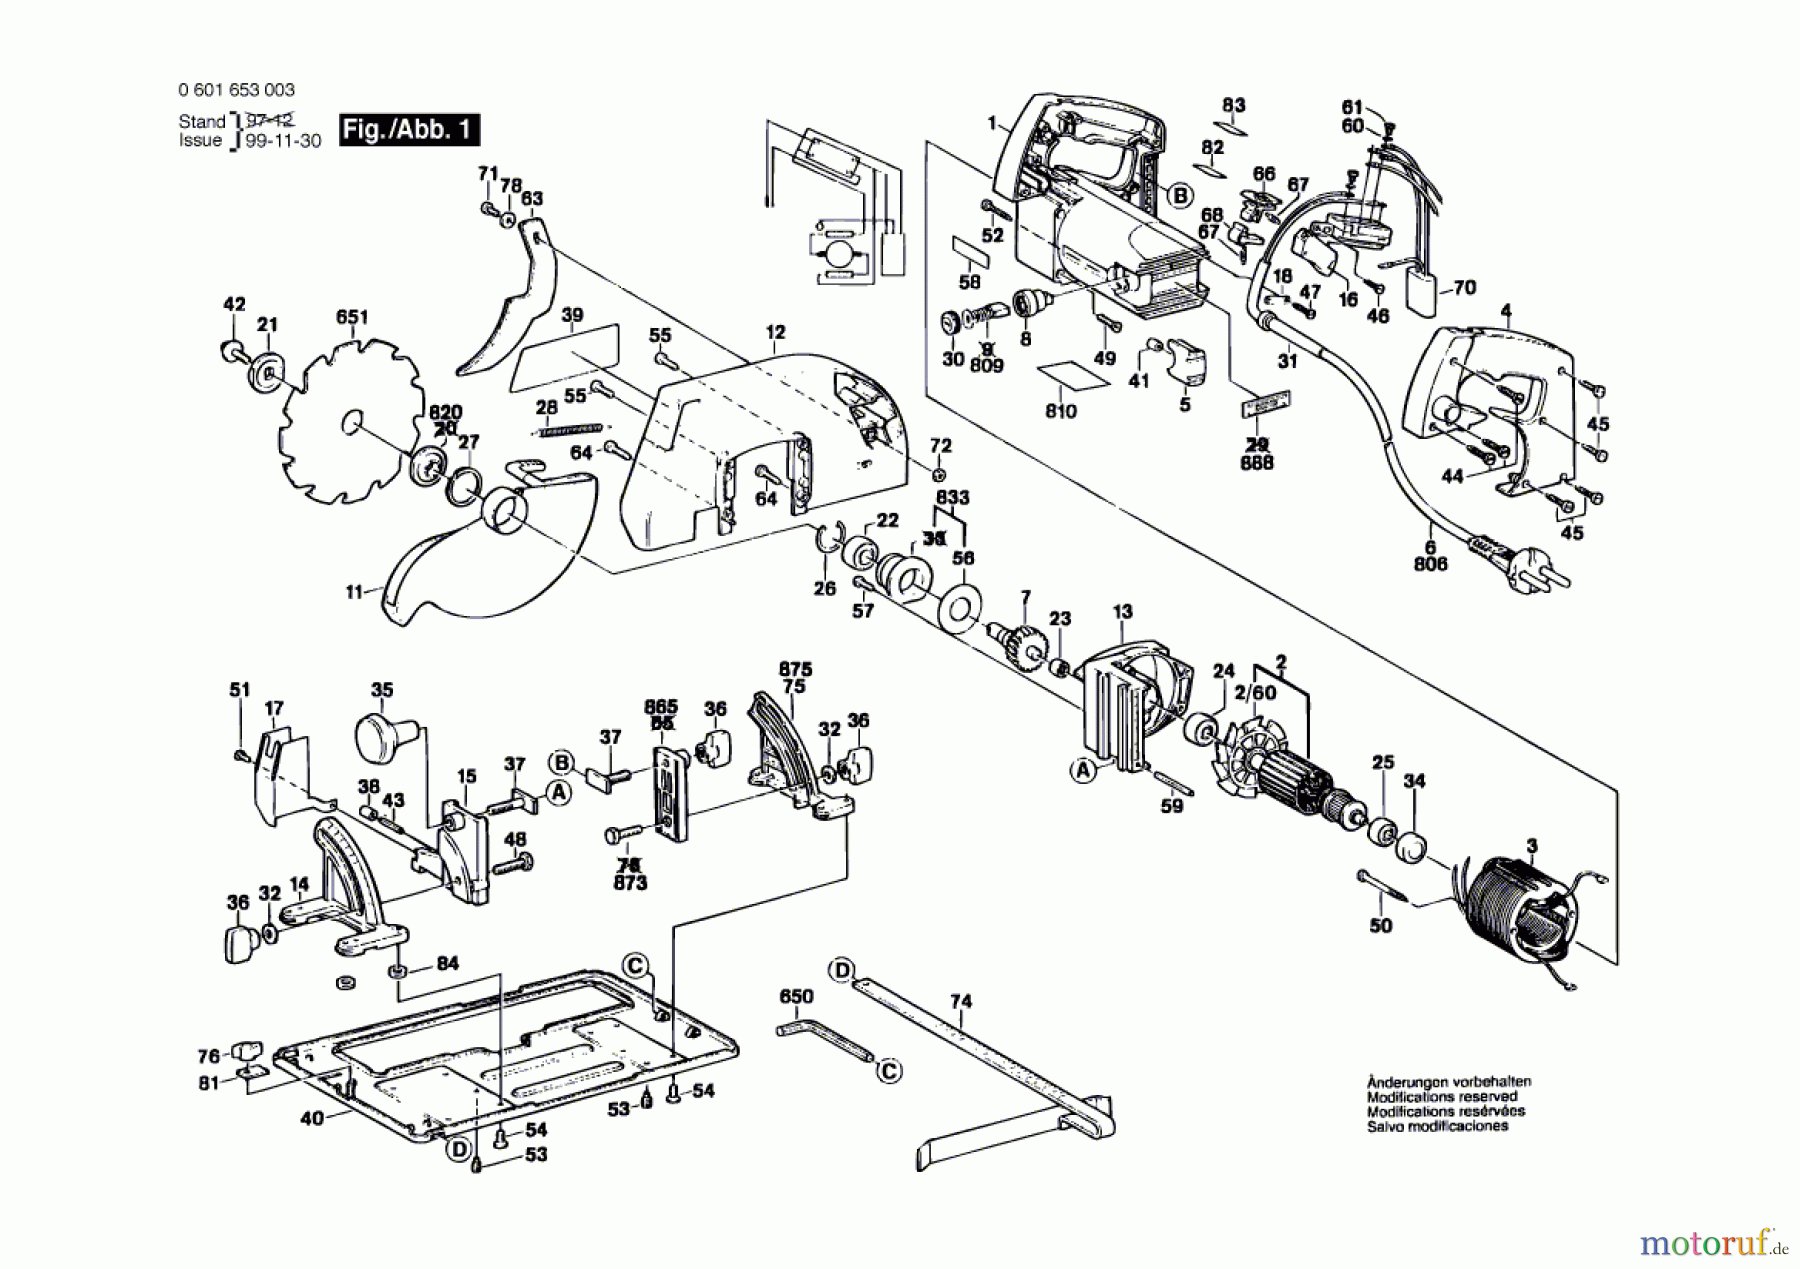  Bosch Werkzeug Handkreissäge GKS 85 S Seite 1